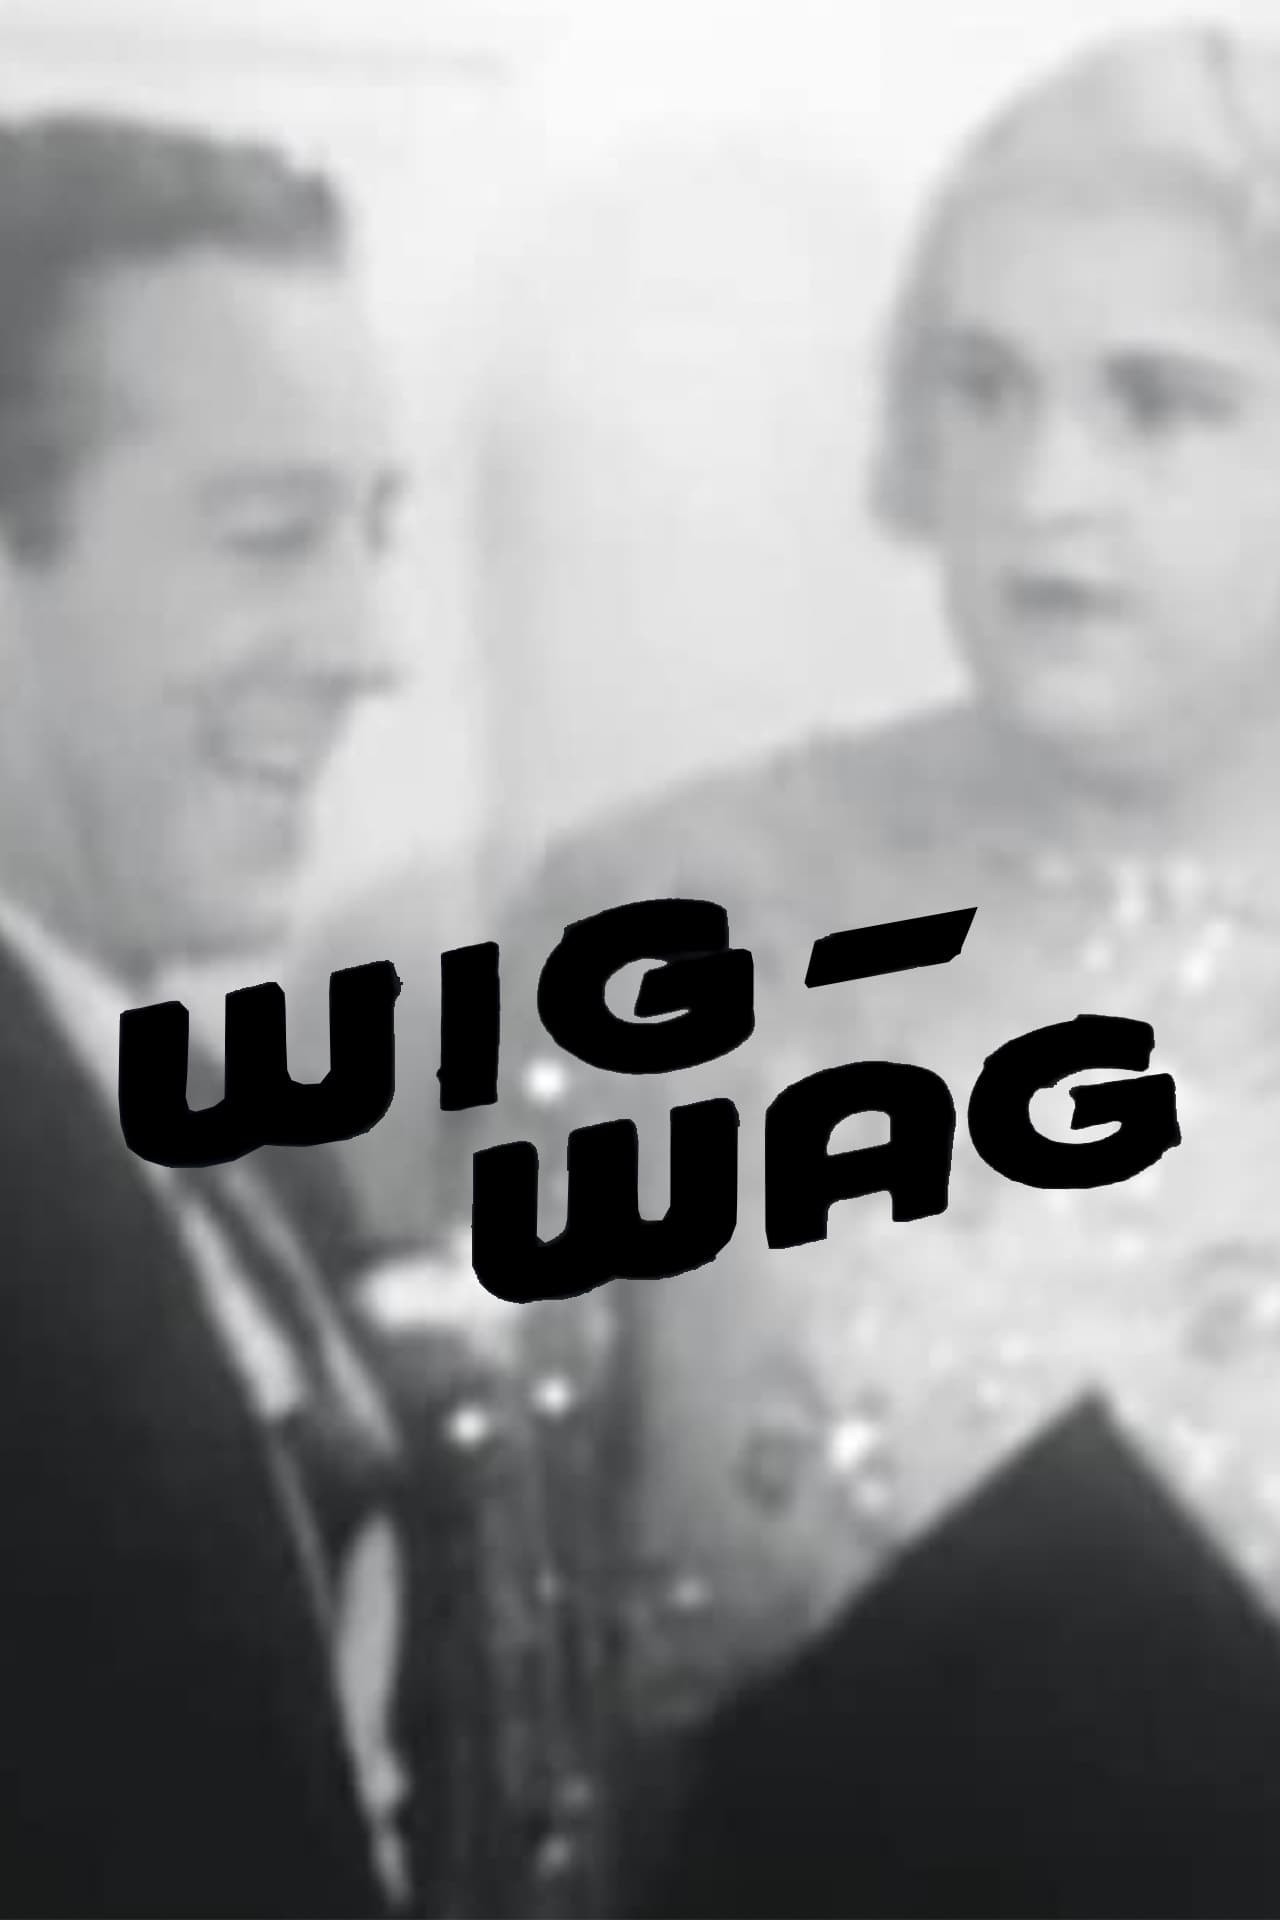 Wig-Wag